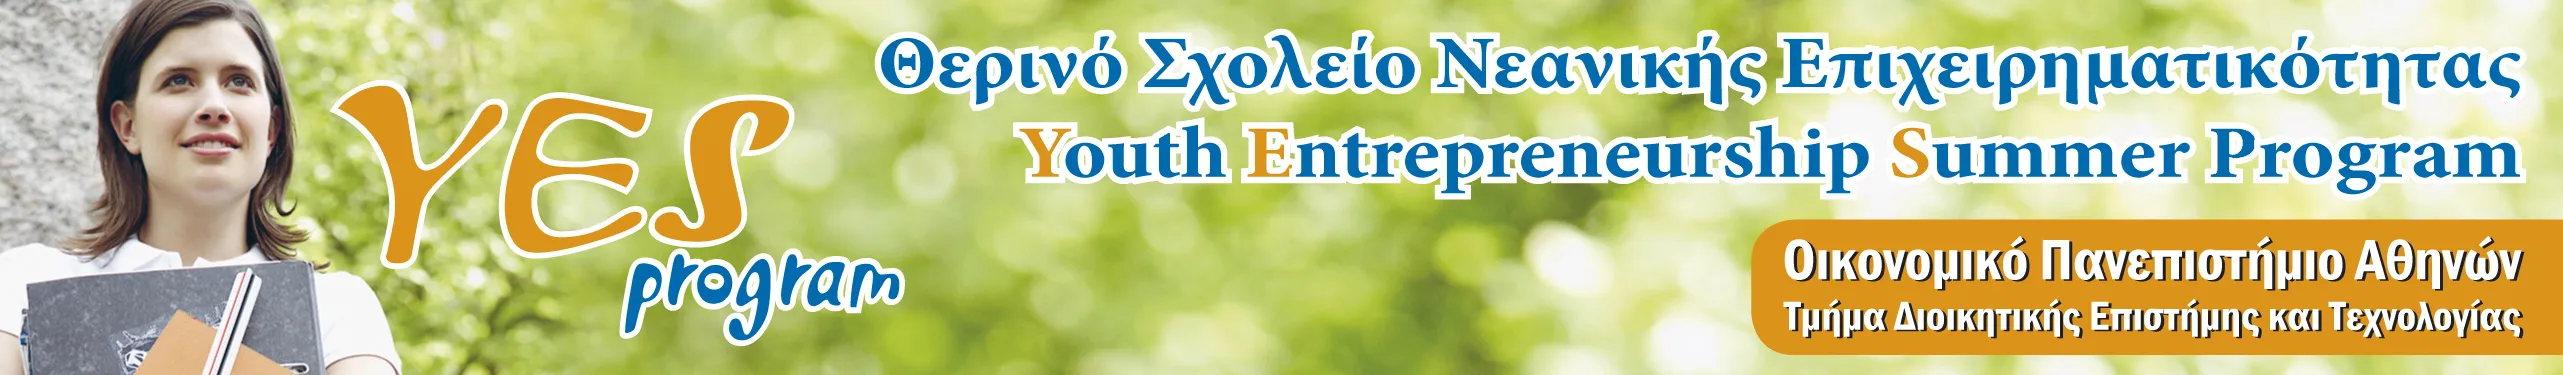 ΟΠΑ | 4ο Θερινό Σχολείο Νεανικής Επιχειρηματικότητας